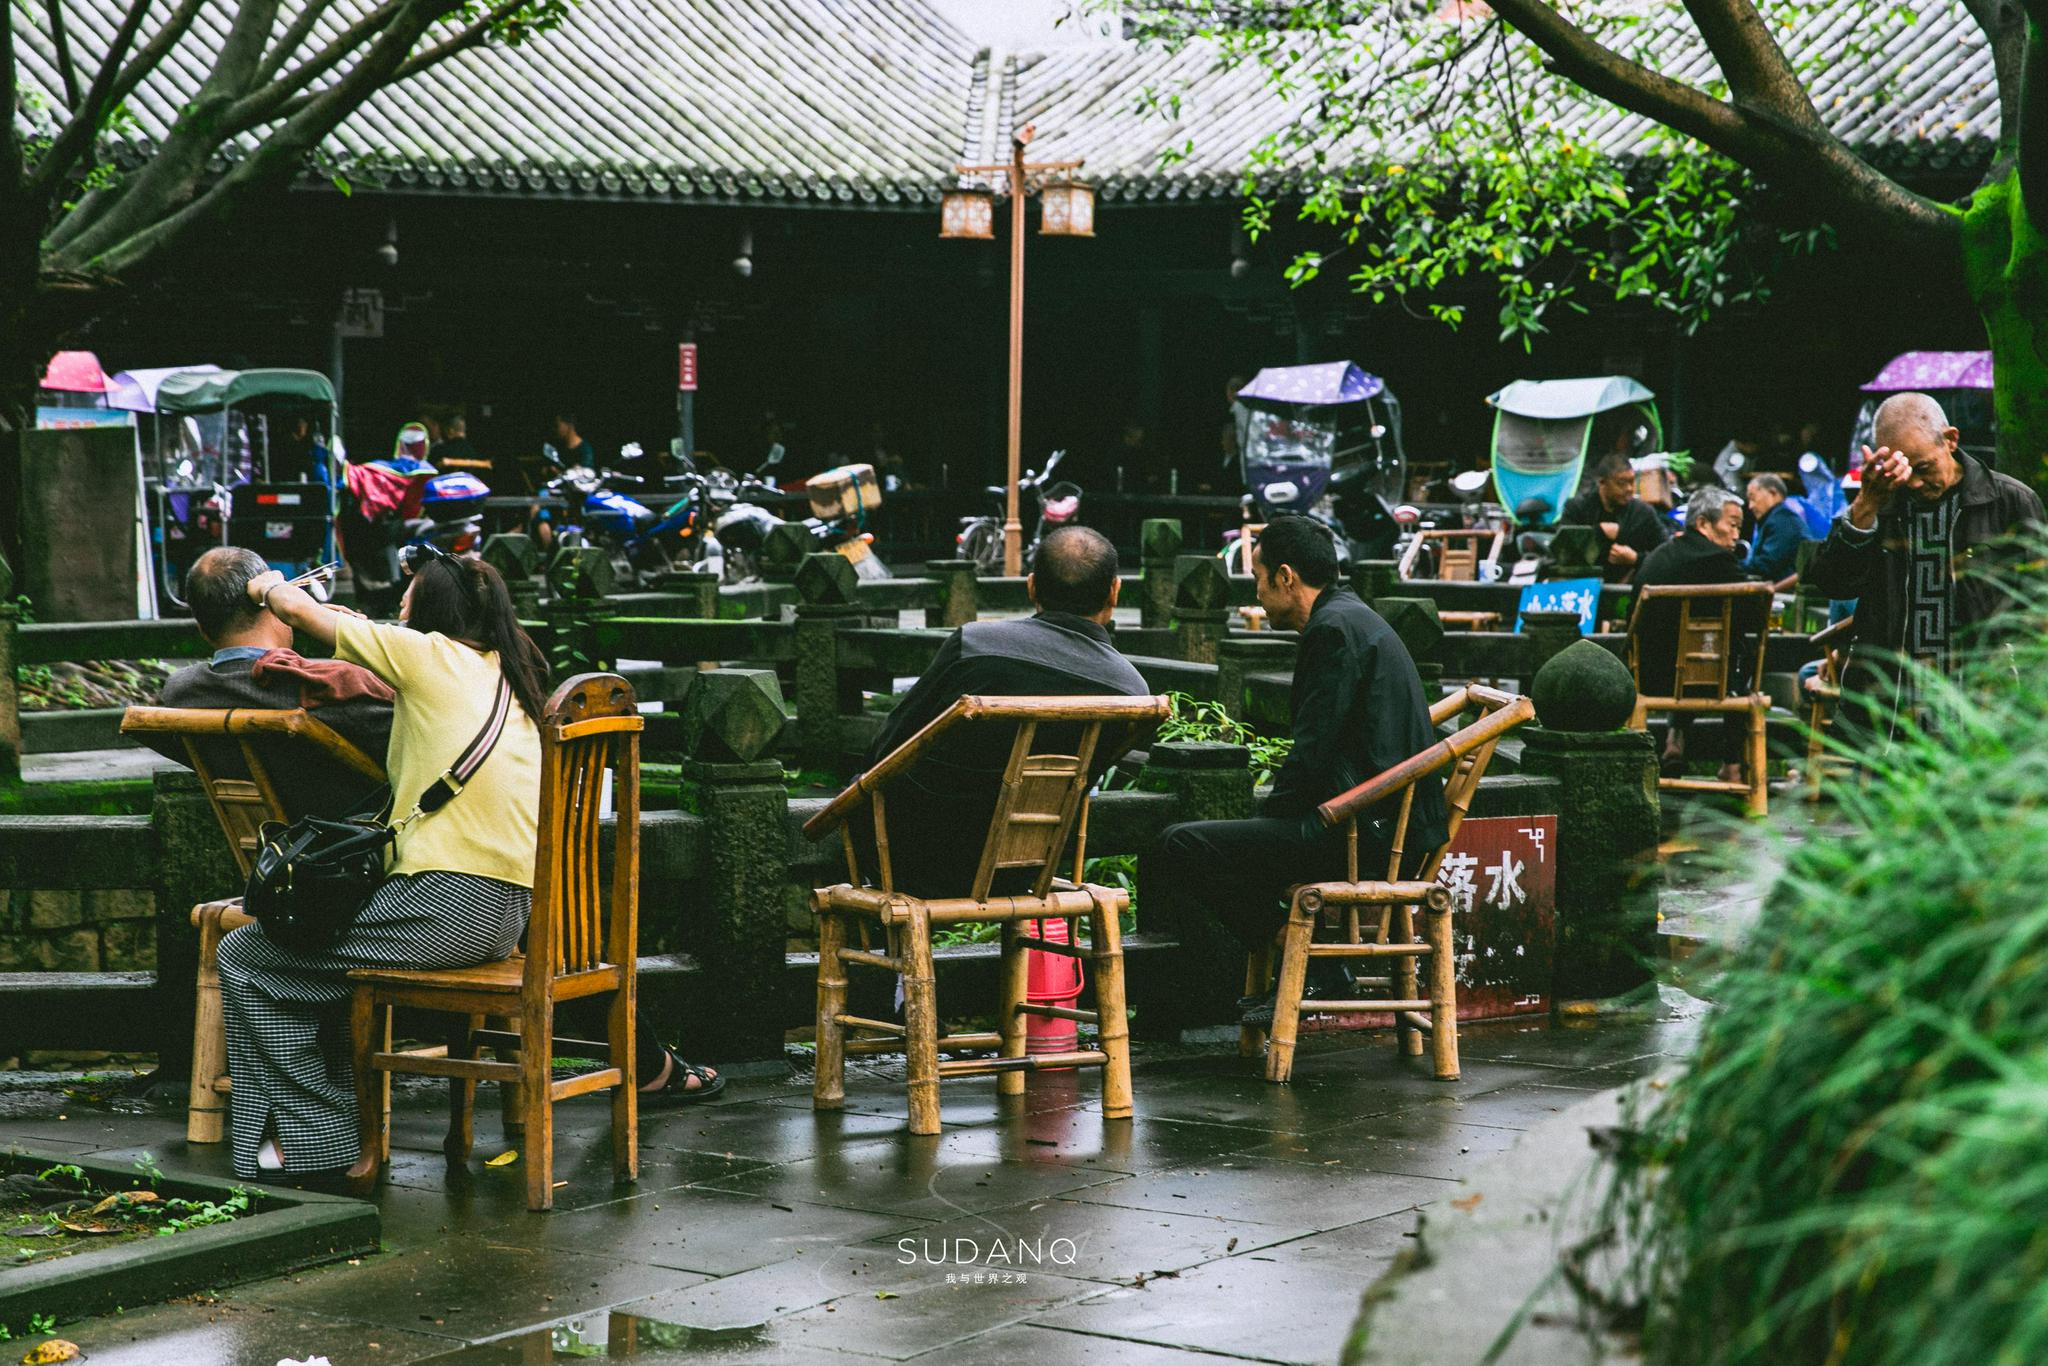 老人们聚在茶馆喝茶聊天-蓝牛仔影像-中国原创广告影像素材